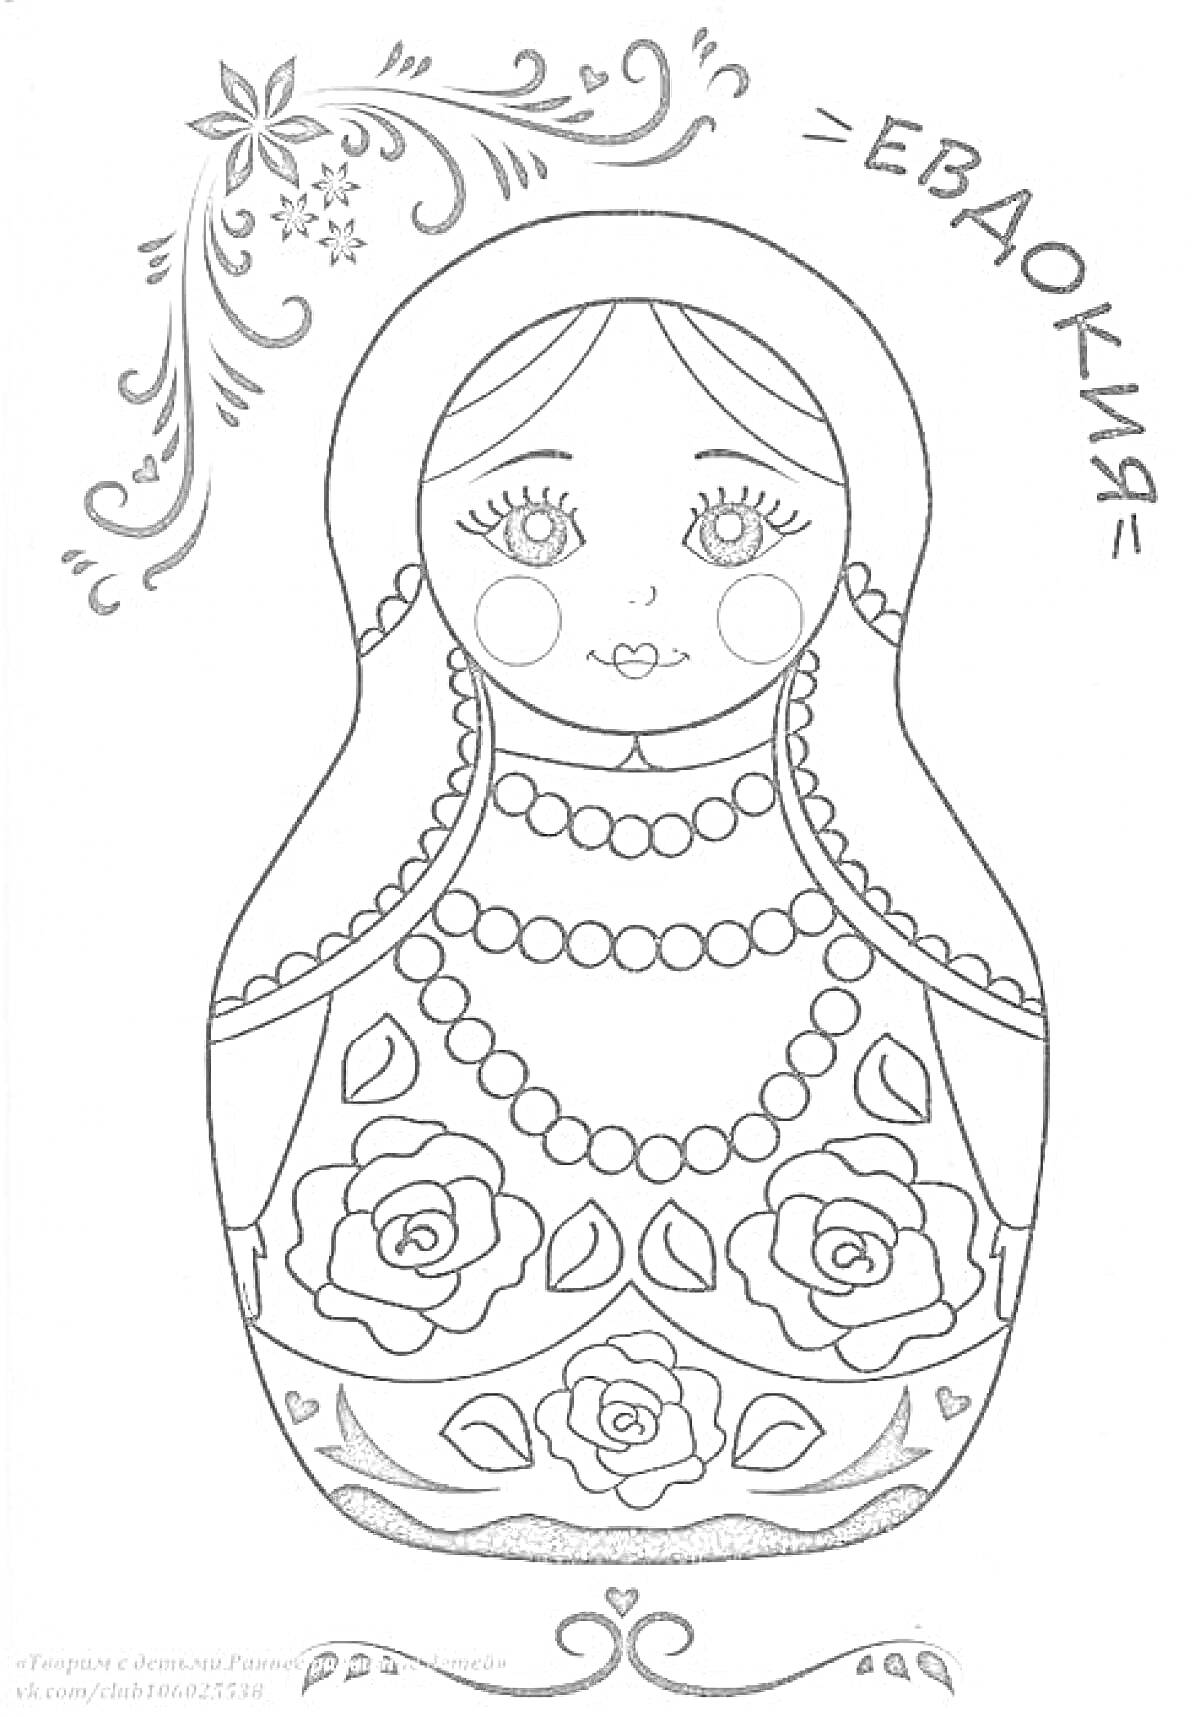 Раскраска Матрешка с орнаментом, ожерельем, цветами и именем Евдокия